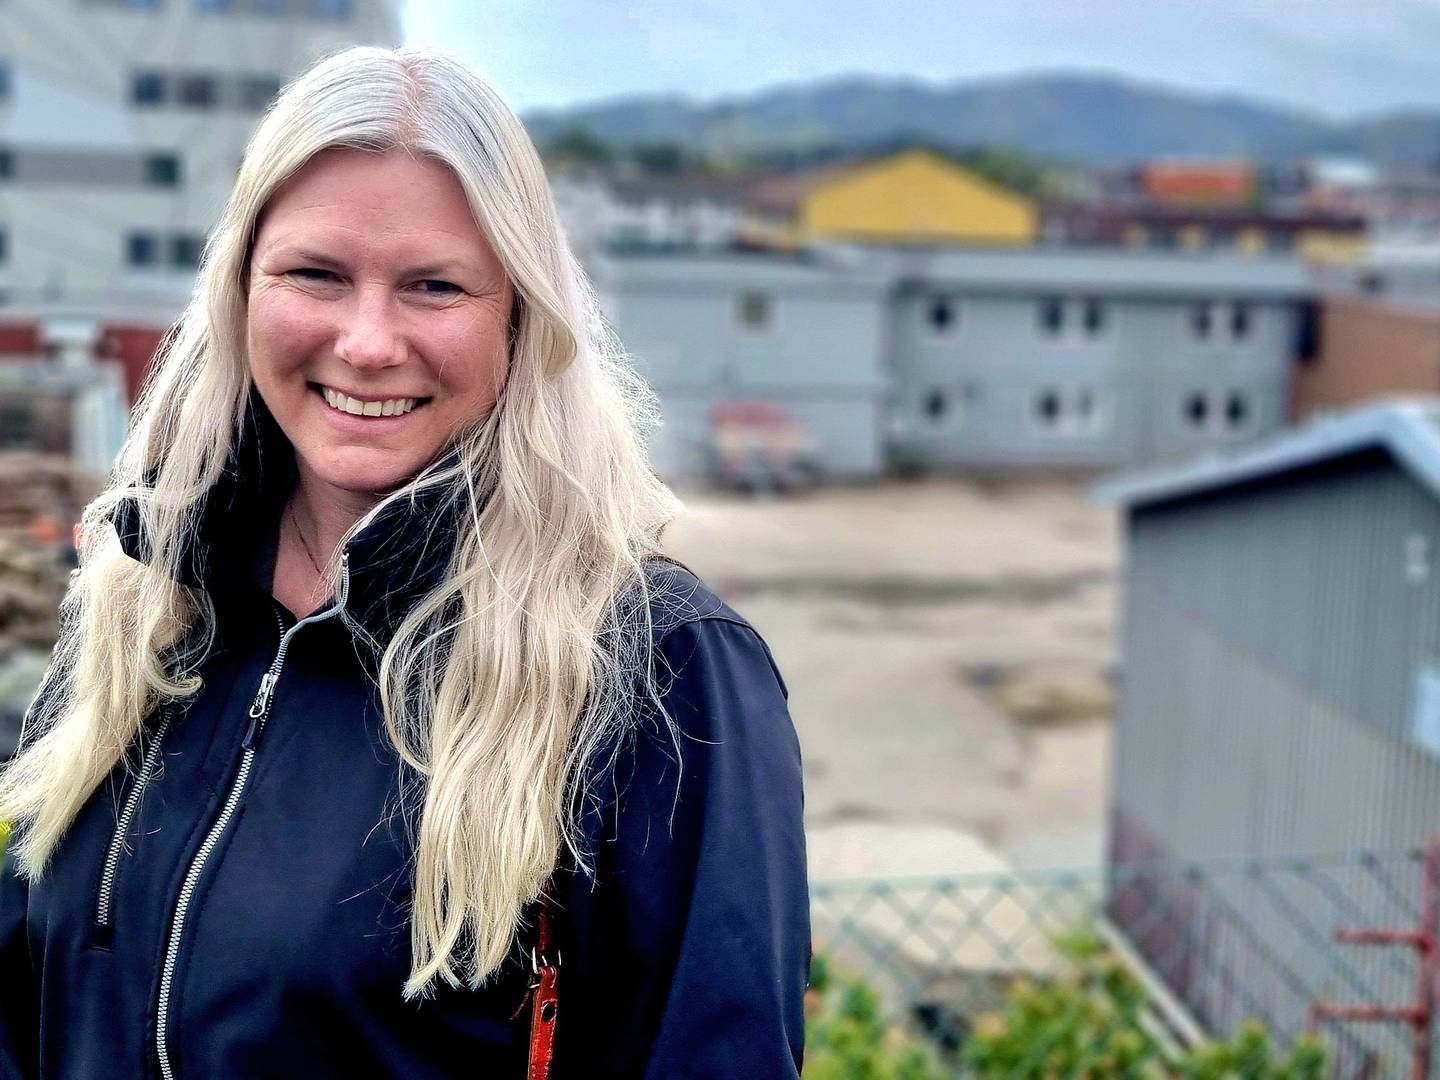 UTVIDER I KNARVIK: Bonava og regionsjef Therese Braseth jobber allerede med å utvikle eiendomsprosjektet Lonshøgda i Knarvik. | Foto: Bonava